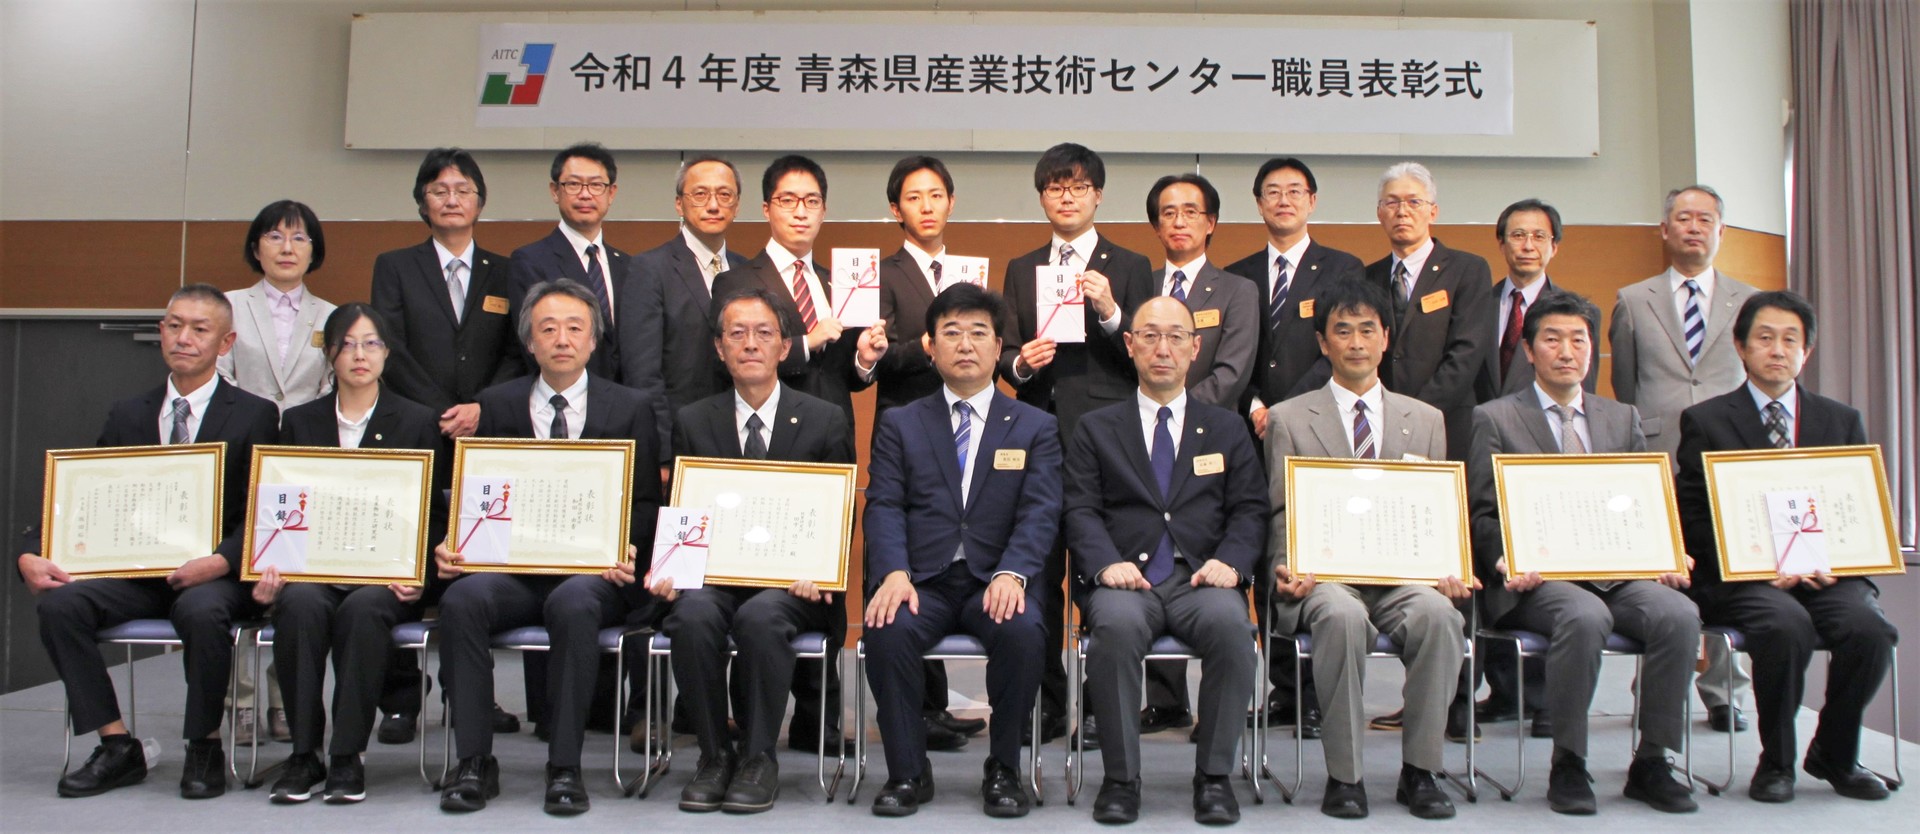 令和４年度職員表彰受賞者の集合写真